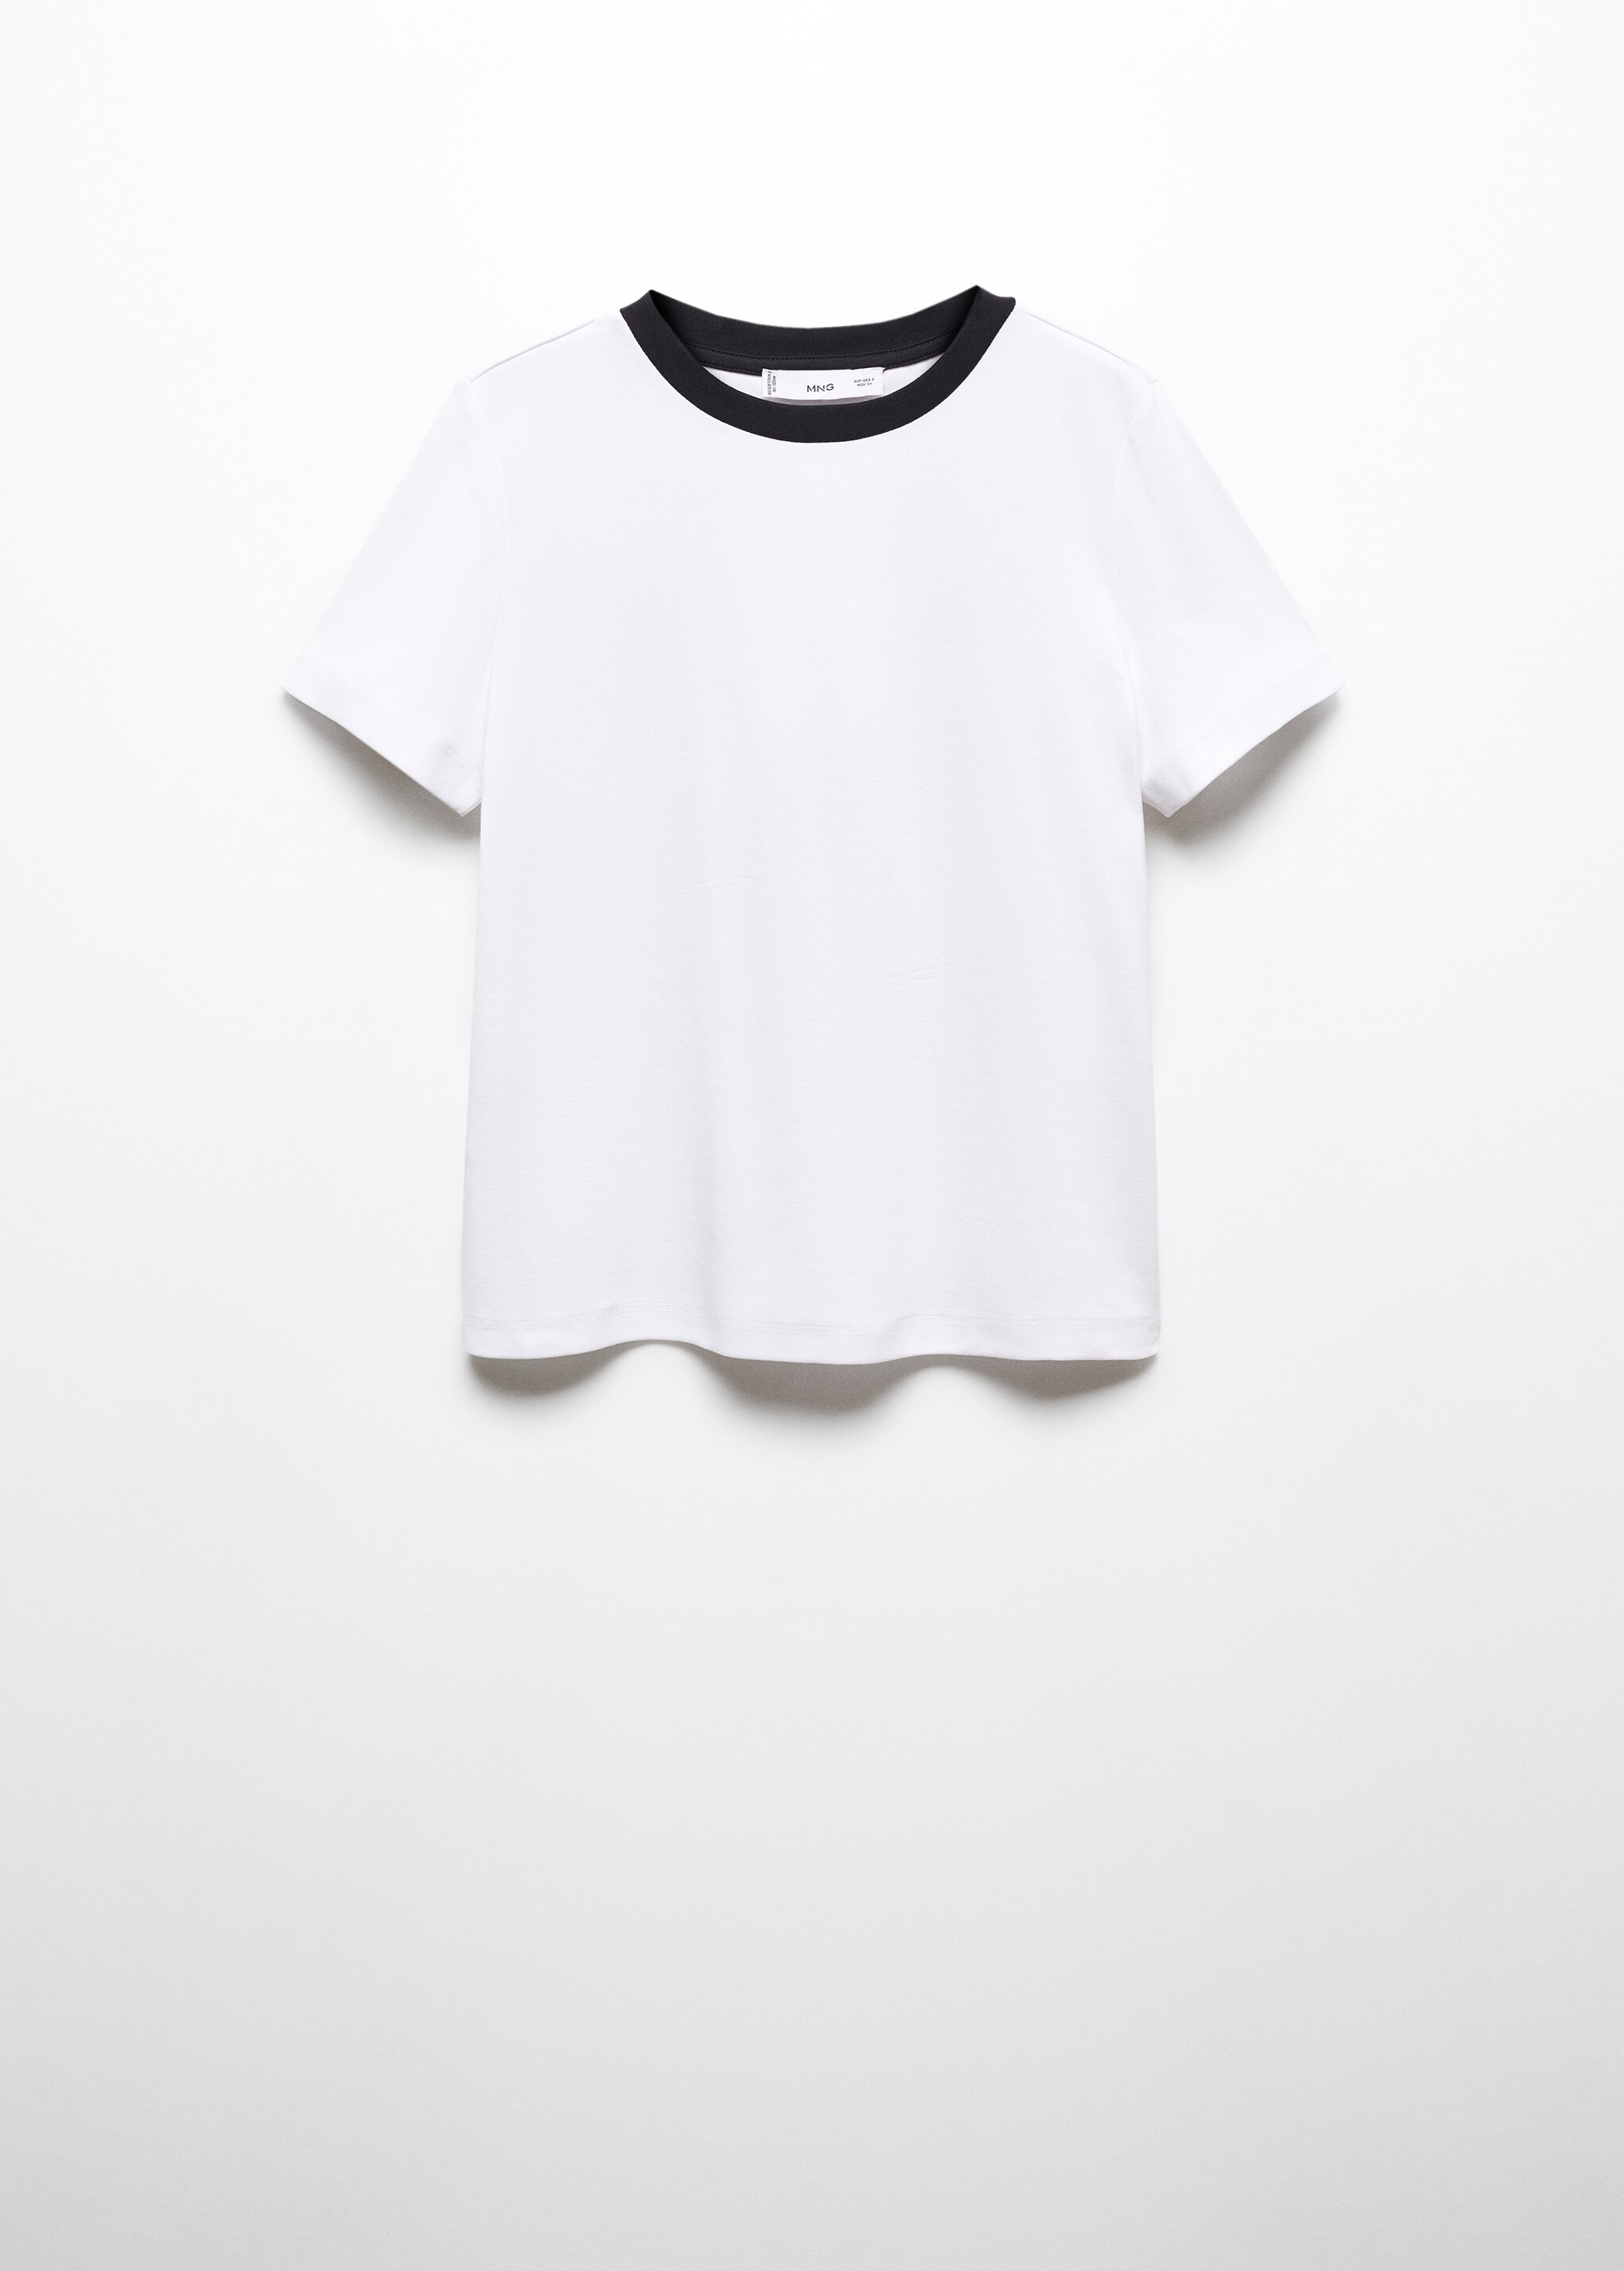 Camiseta algodón cuello contraste - Artículo sin modelo